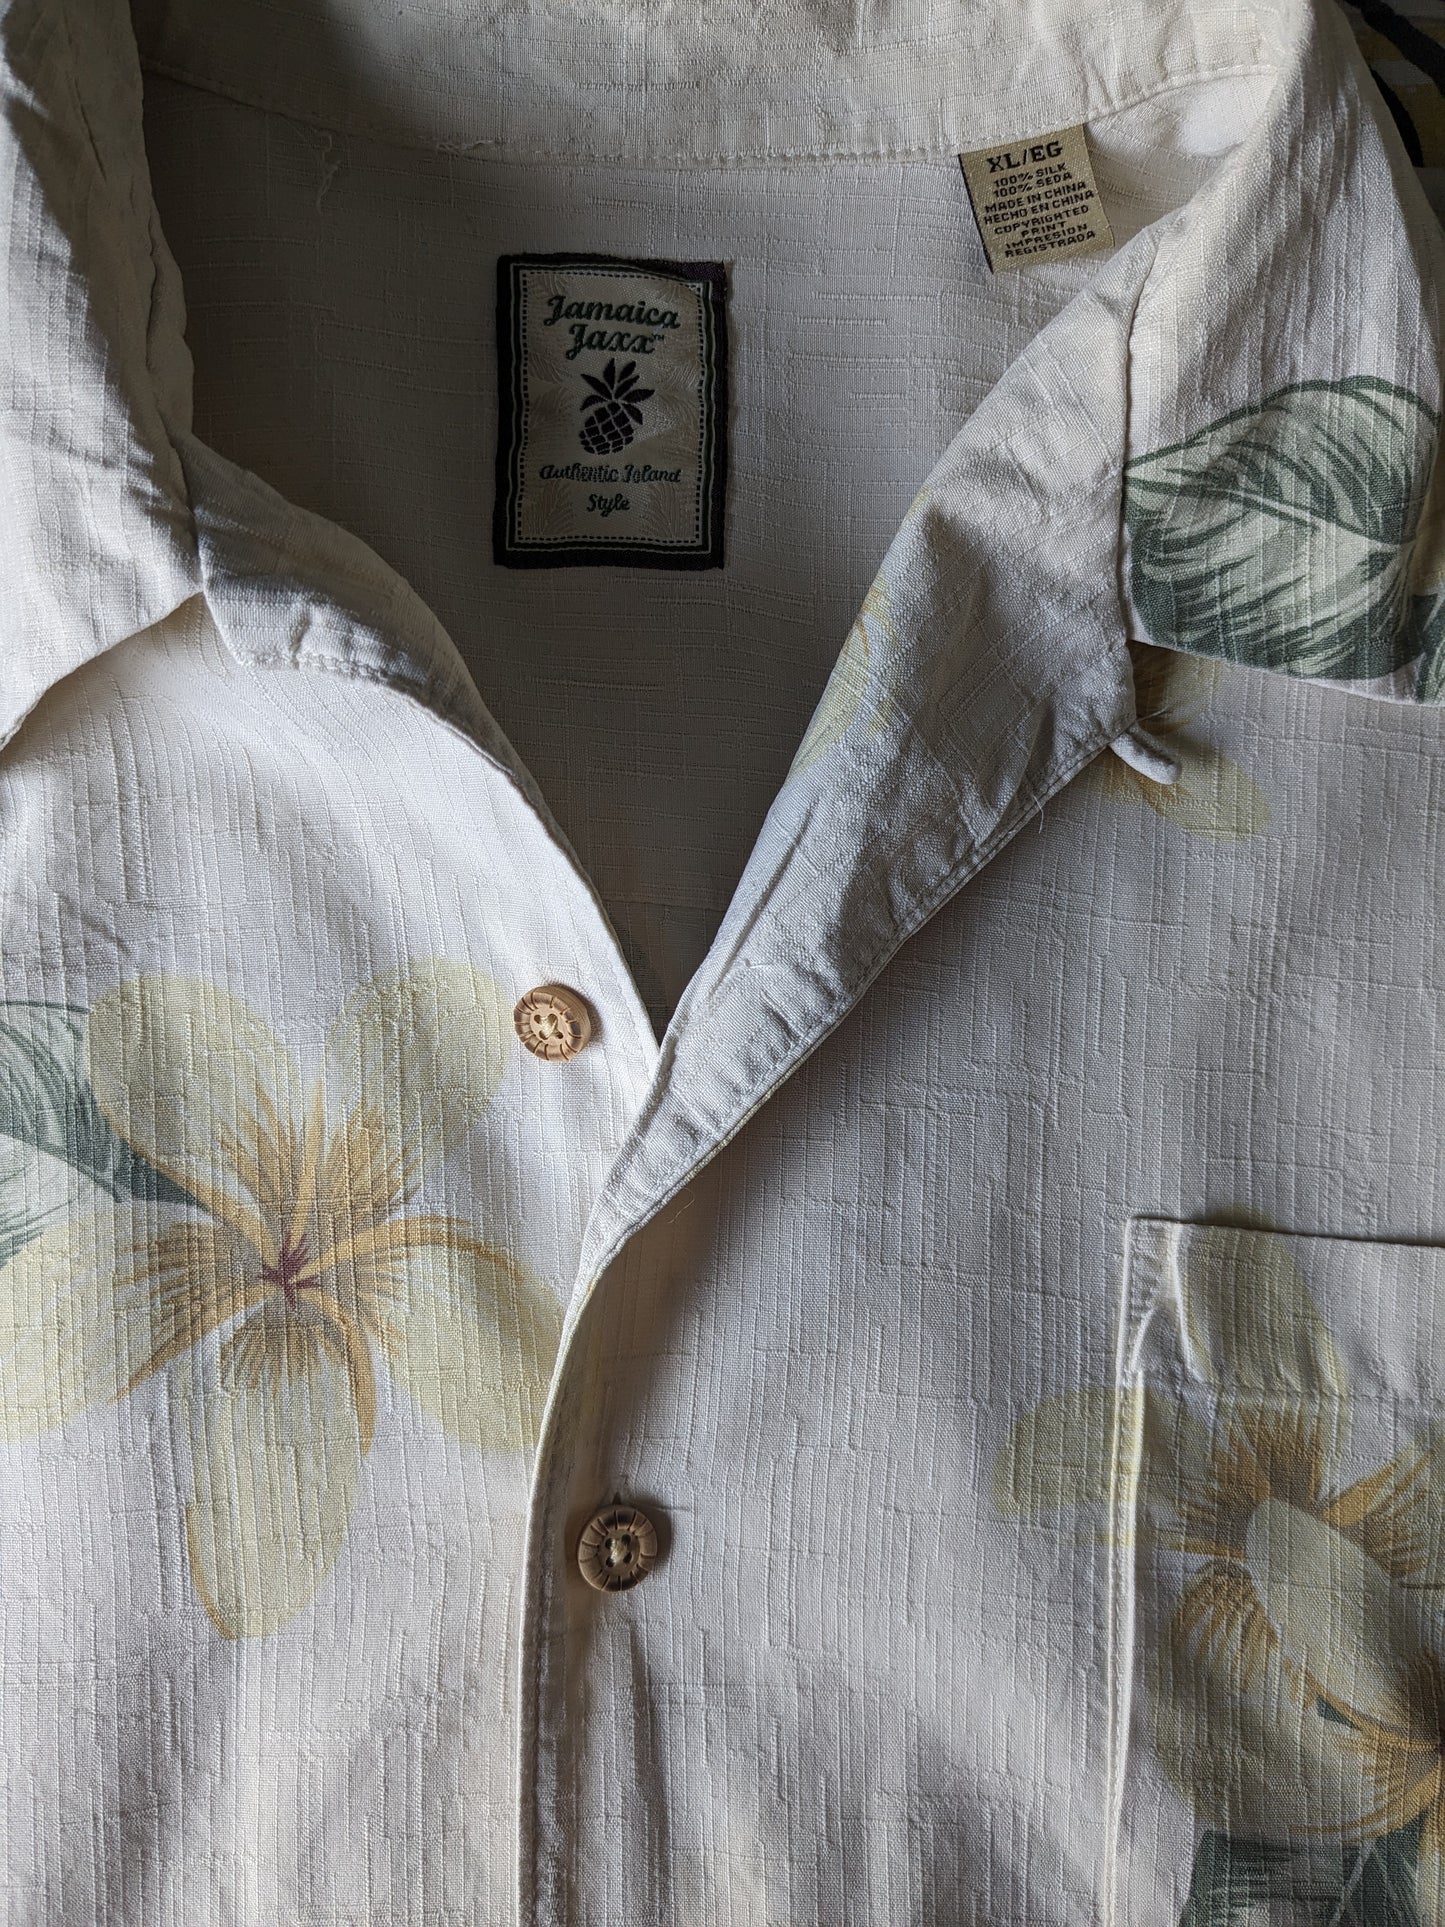 Jamaica Jaxx original Hawaii shirt short sleeve. Silk with beige yellow green flowers print. Size XL.